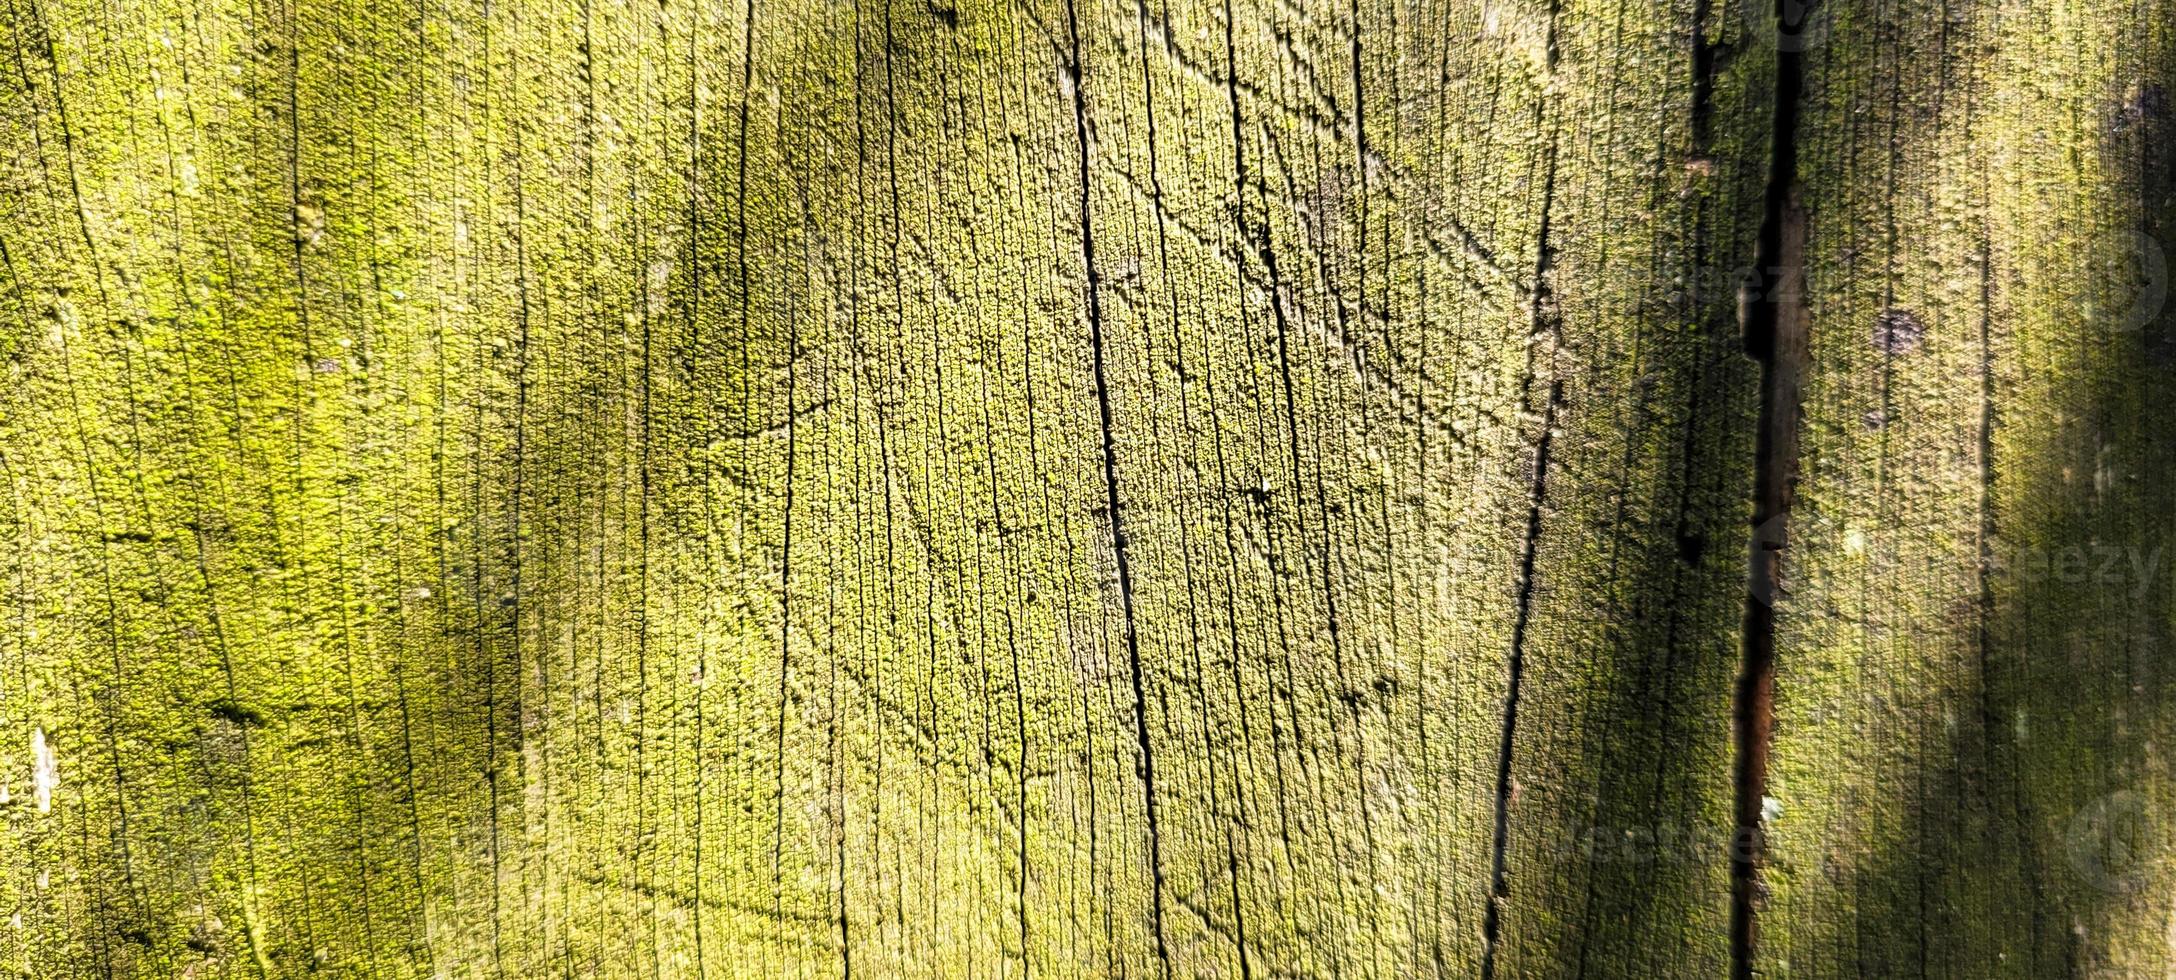 viejo tronco rústico de madera con textura foto